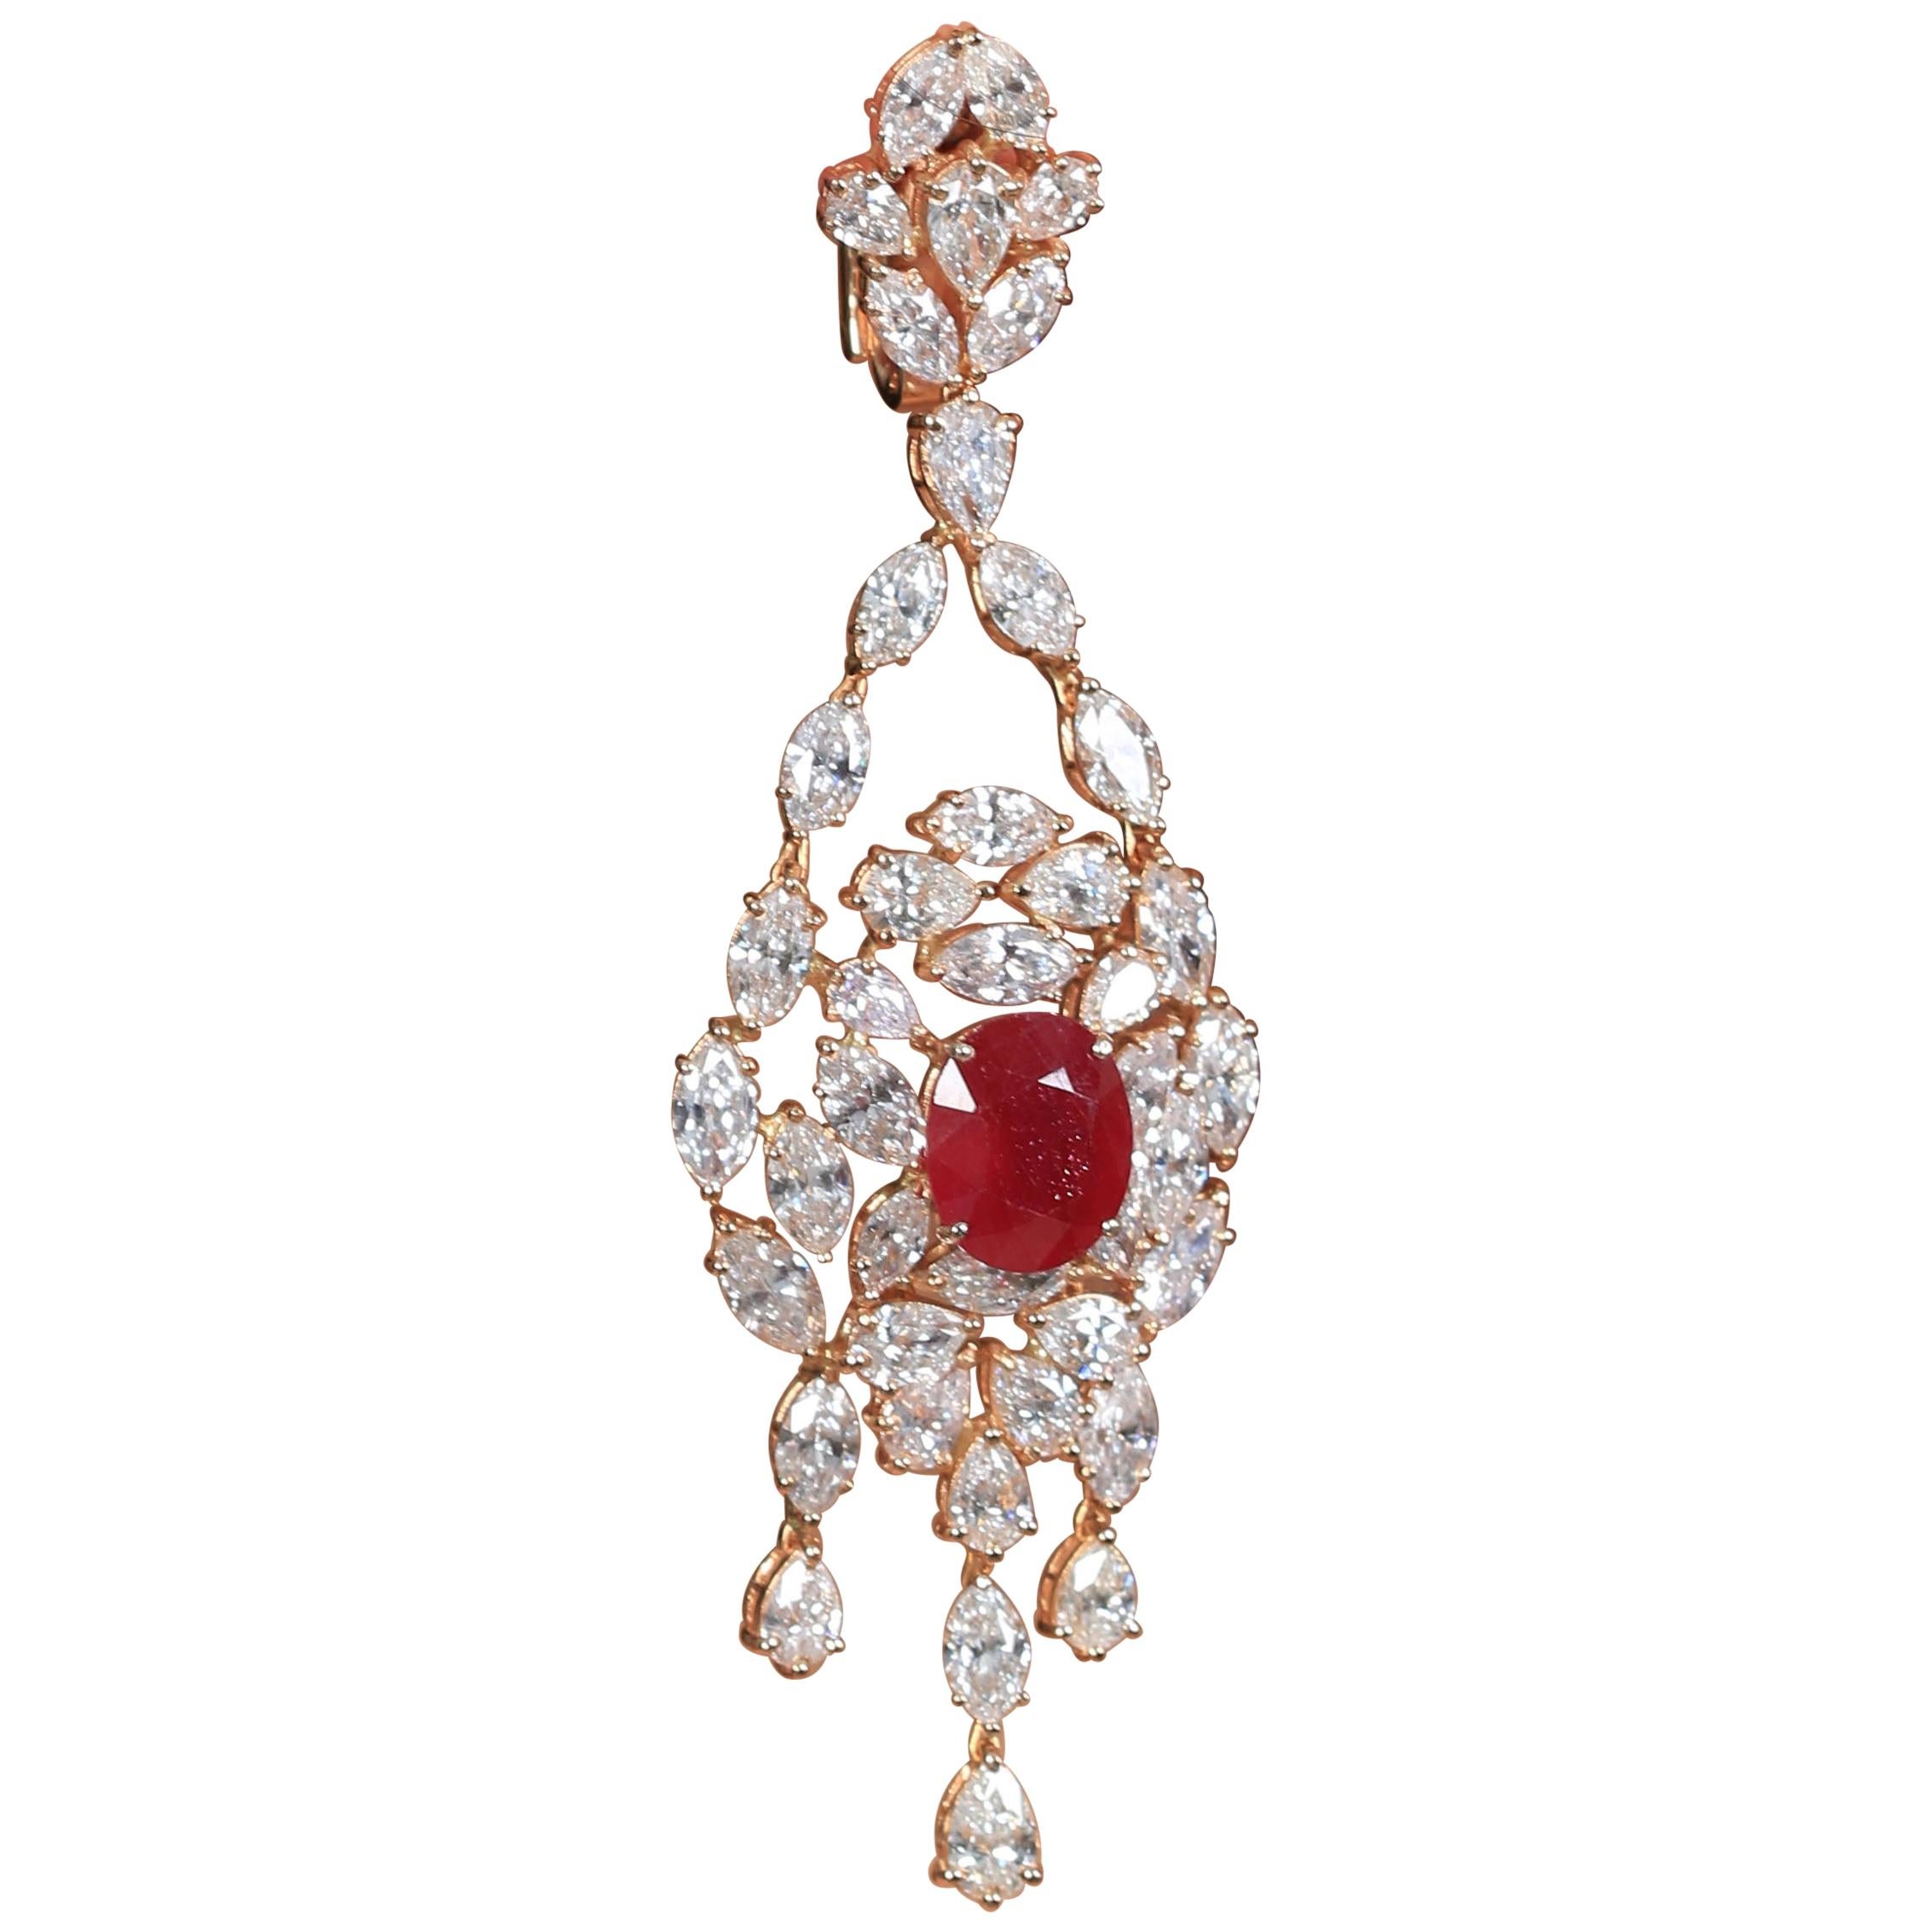 Ces boucles d'oreilles en or rose de la marque Amwaj Jewelry présentent un design impérial inspirant, avec un rubis africain rond de 12,39 carats entouré d'un mélange de diamants fins en forme de marquise et de poire.

Clarté du diamant : VS SI / G